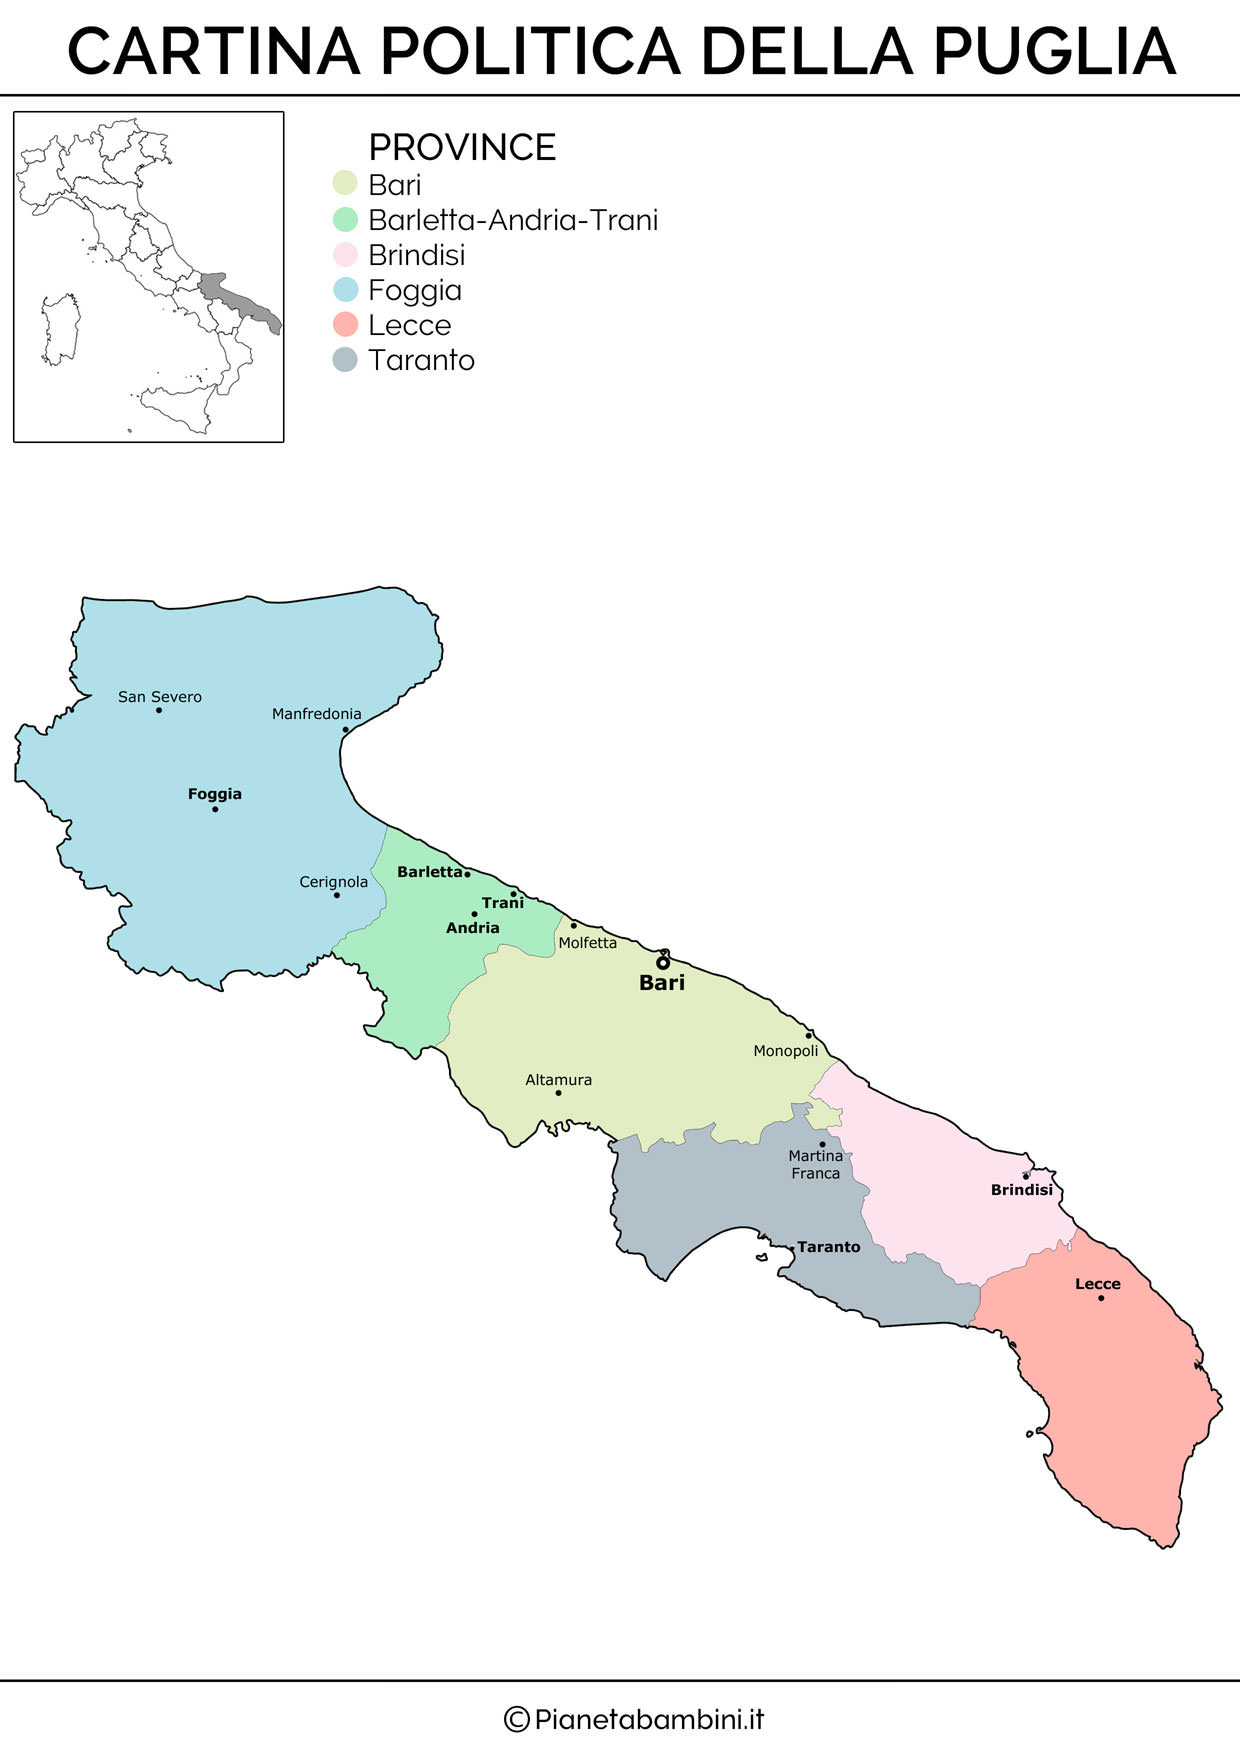 Cartina della Puglia in versione politica da stampare gratis